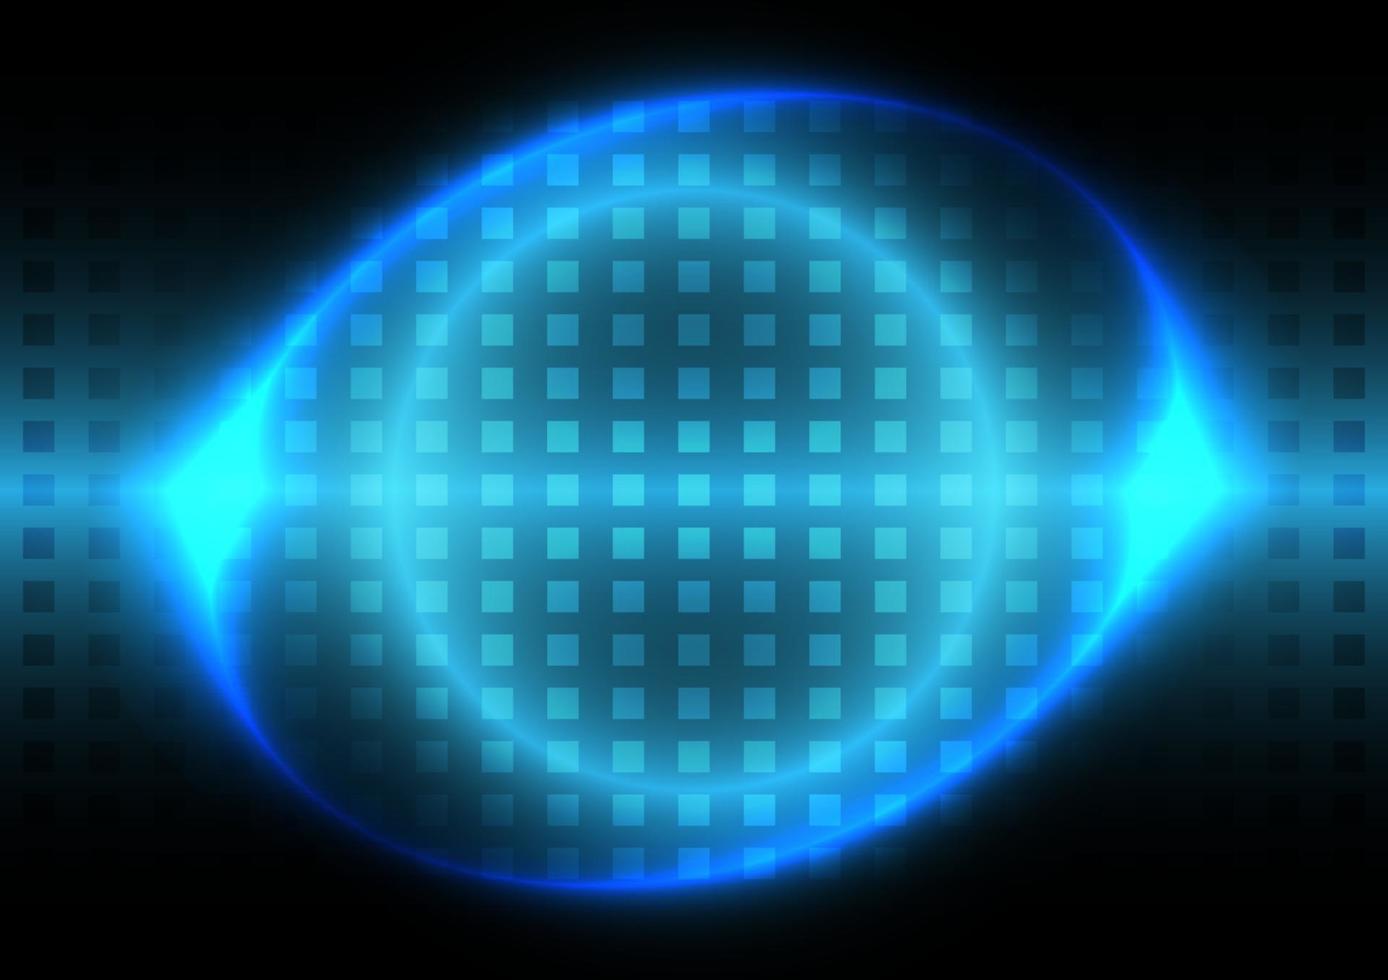 néon bleu clair. fond futuriste. cercle lumineux et écran à motif carré vecteur